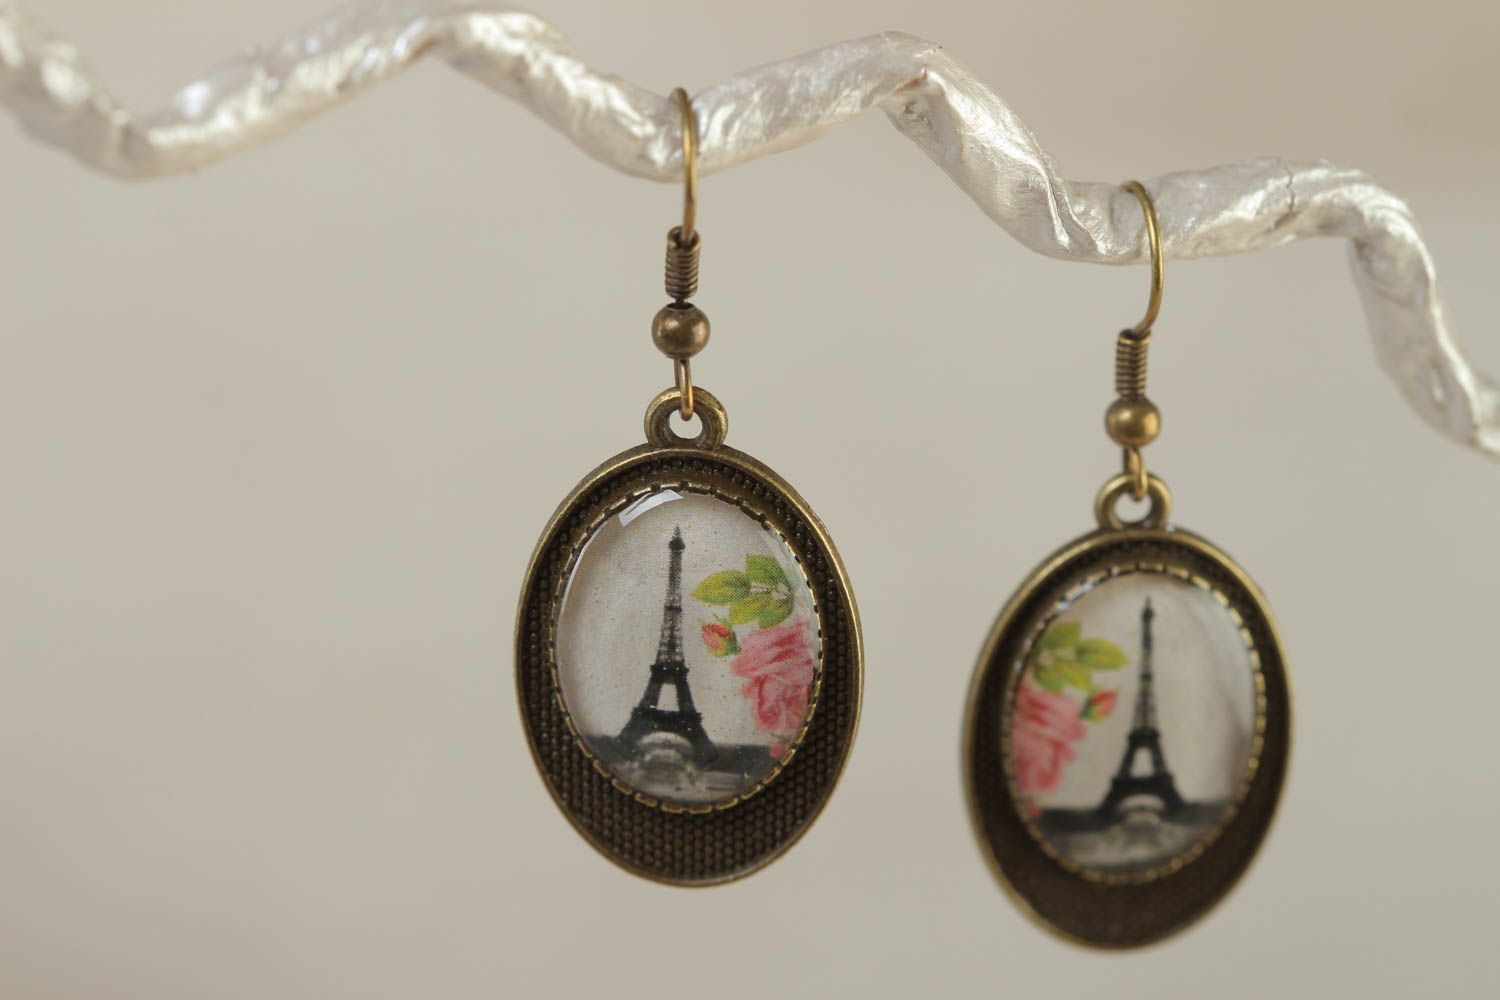 Boucles d'oreilles ovales métal résine spécial image de tour Eiffel faites main photo 1